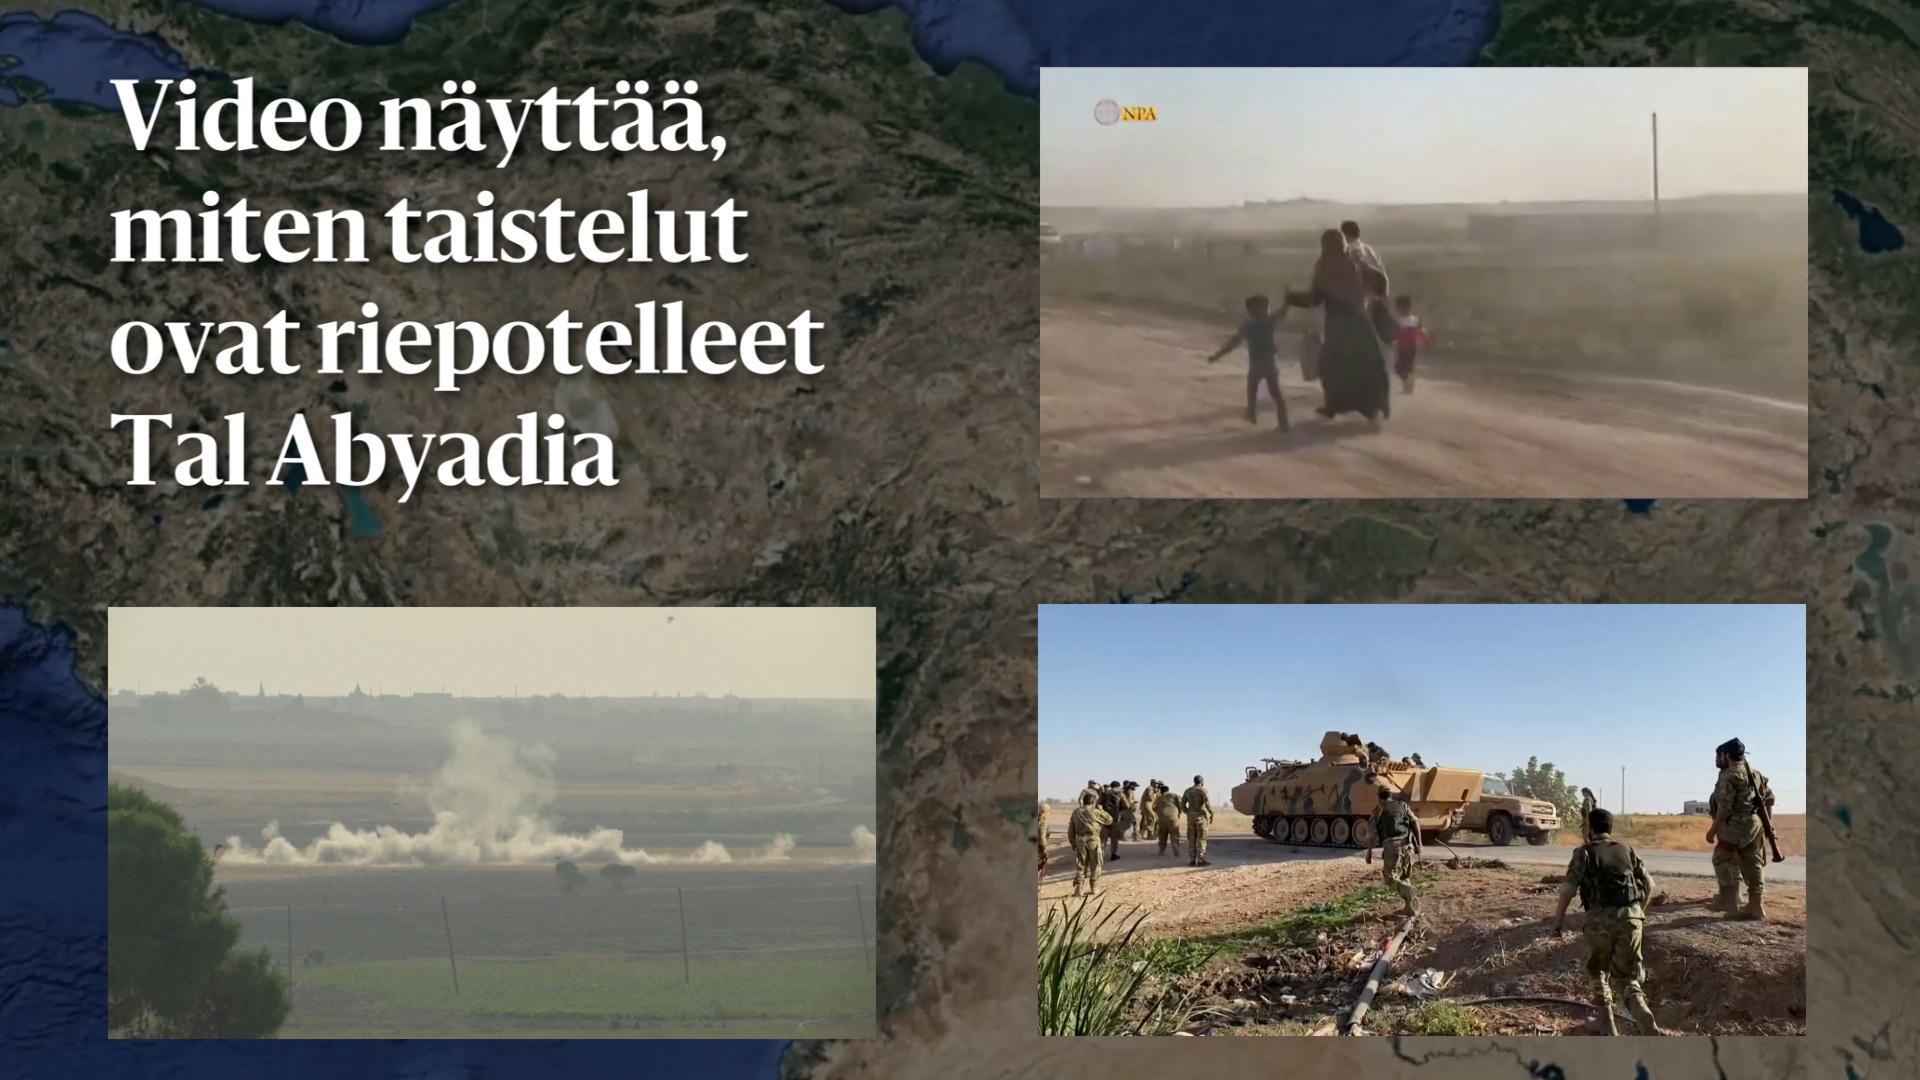 Video näyttää, miten taistelut ovat riepotelleet Tal Abyadia